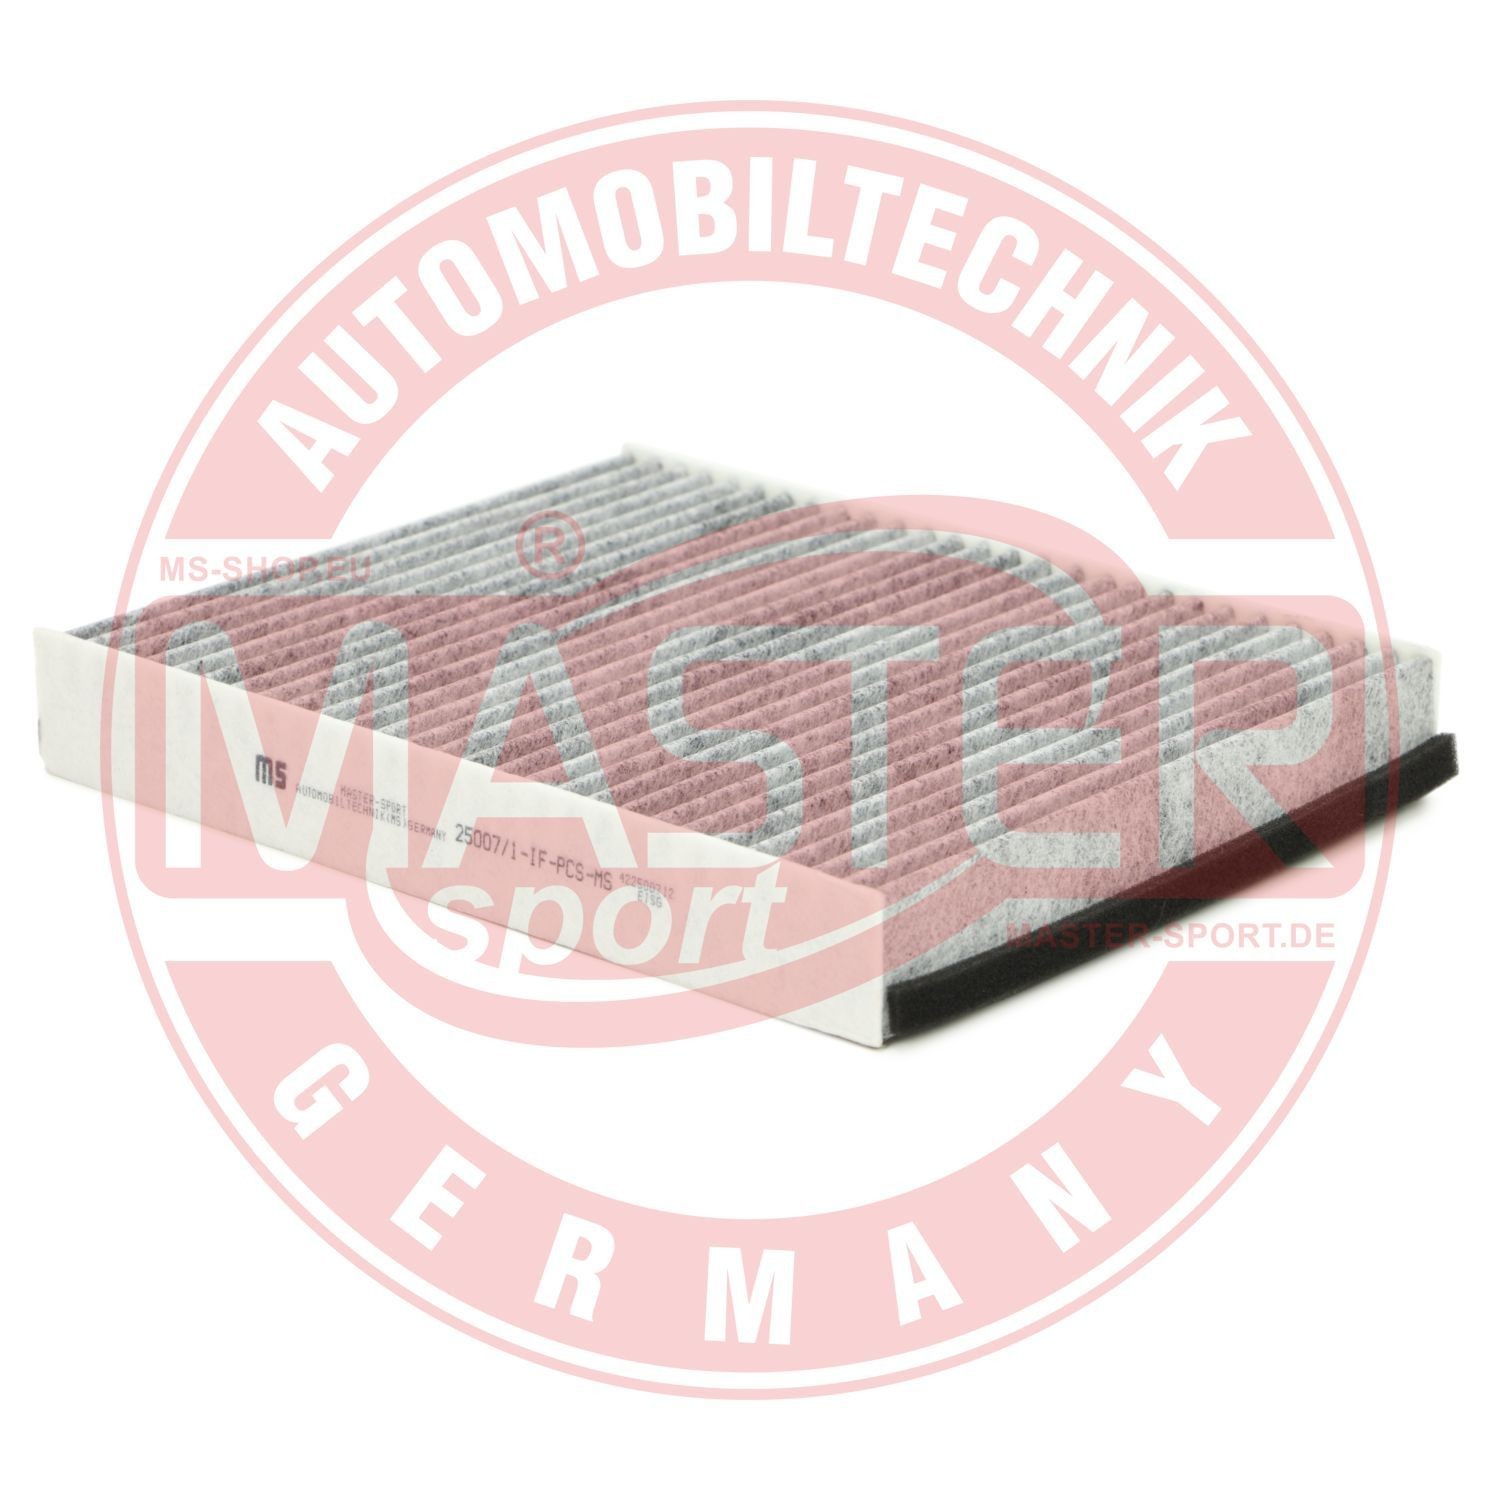 MASTER-SPORT Filtr pyłkowy Volvo 25007/1-IF-PCS-MS w oryginalnej jakości